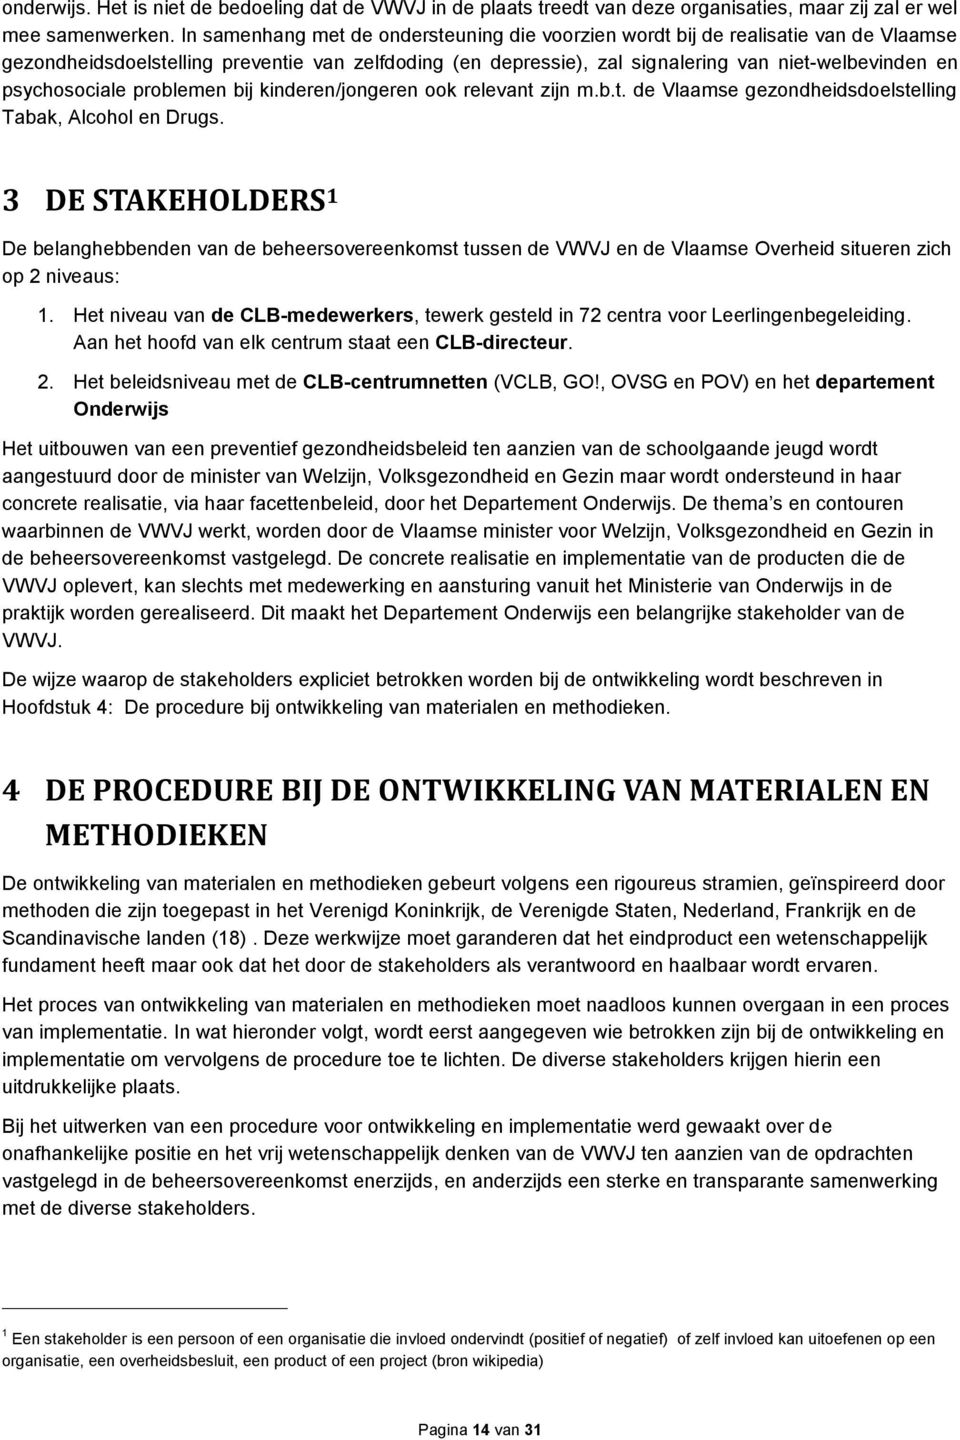 prblemen bij kinderen/jngeren k relevant zijn m.b.t. de Vlaamse gezndheidsdelstelling Tabak, Alchl en Drugs.